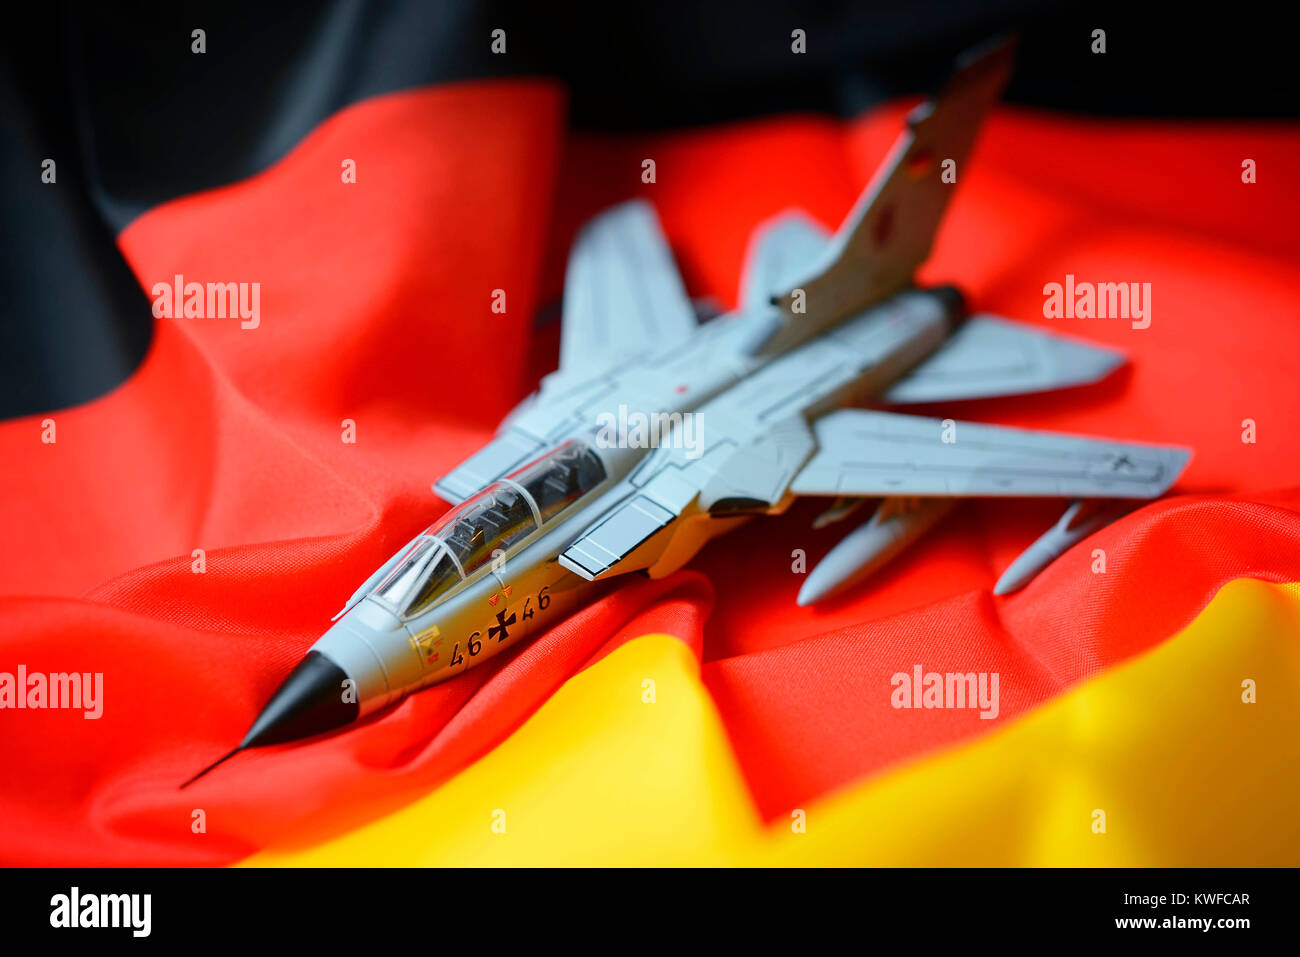 Tornado in Germania bandiera estera, assegnazione delle forze armate, Tornado auf Deutschlandfahne, Auslandseinsatz der Bundeswehr Foto Stock